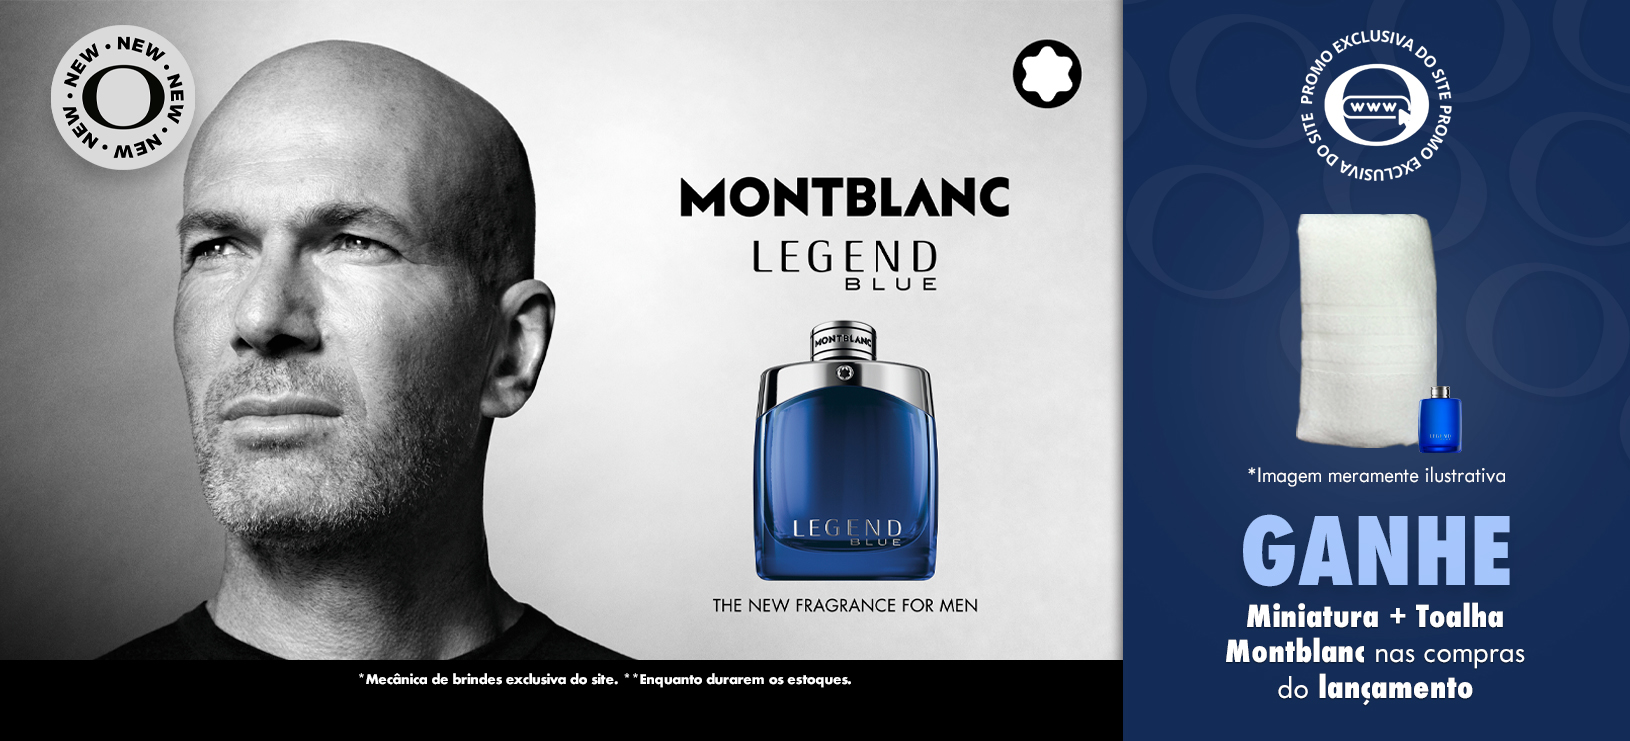 montblanc-legend-blue-banner-desktop